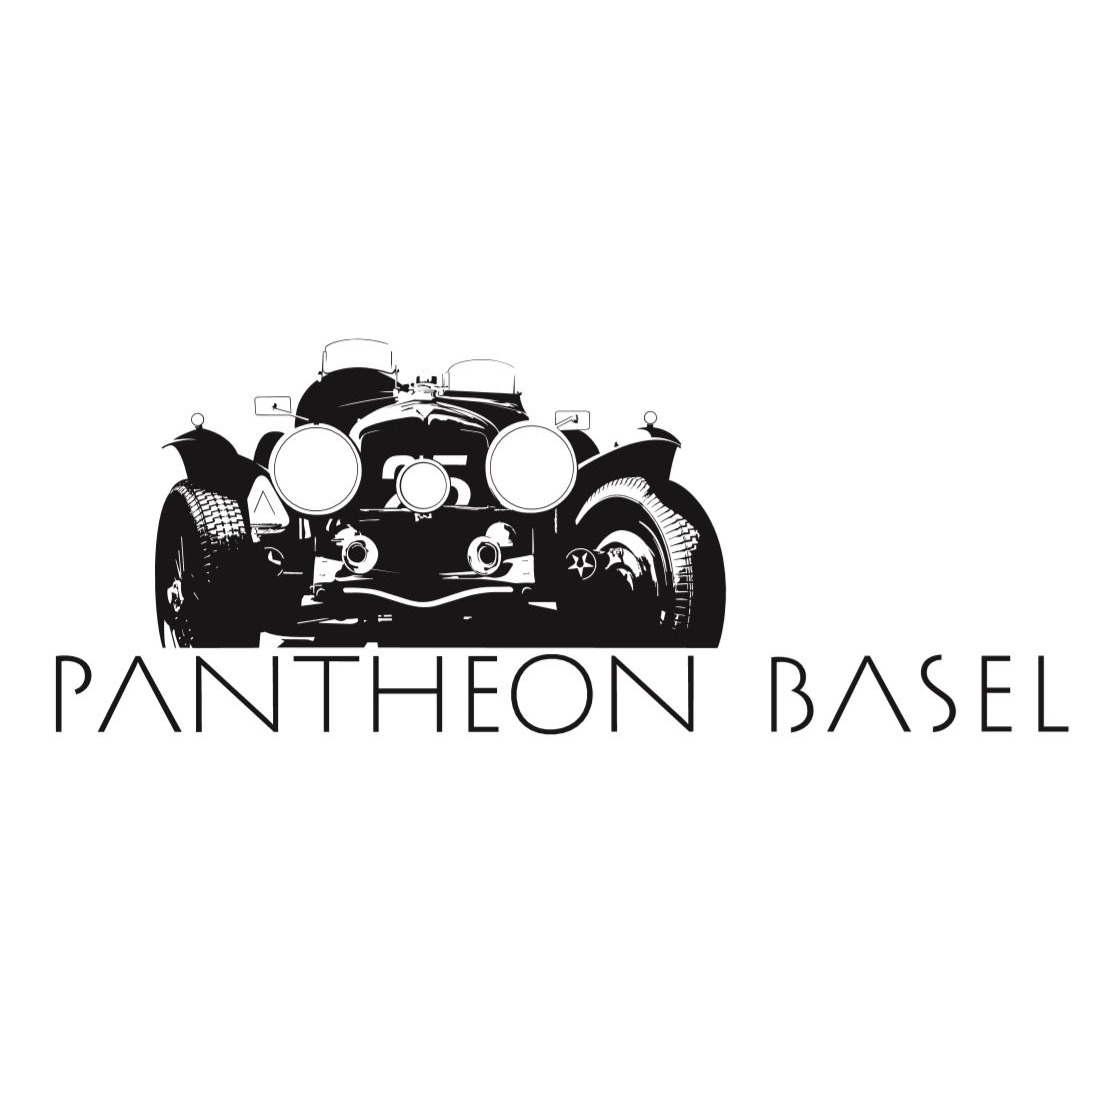 Pantheon Classic Garage AG Logo